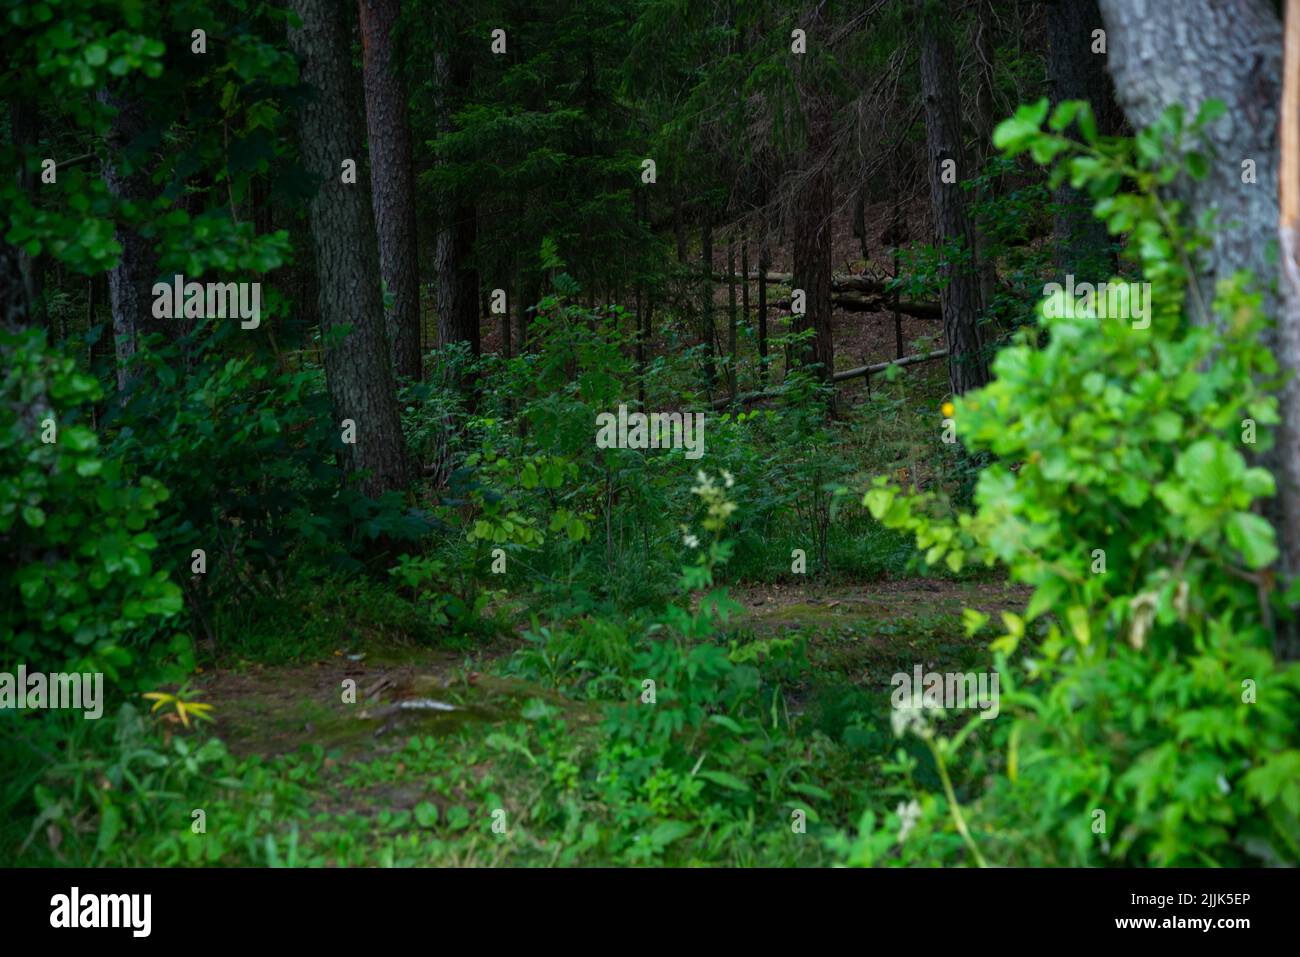 Cespugli verdi in una pineta in una zona ombreggiata. Paesaggio forestale Foto Stock